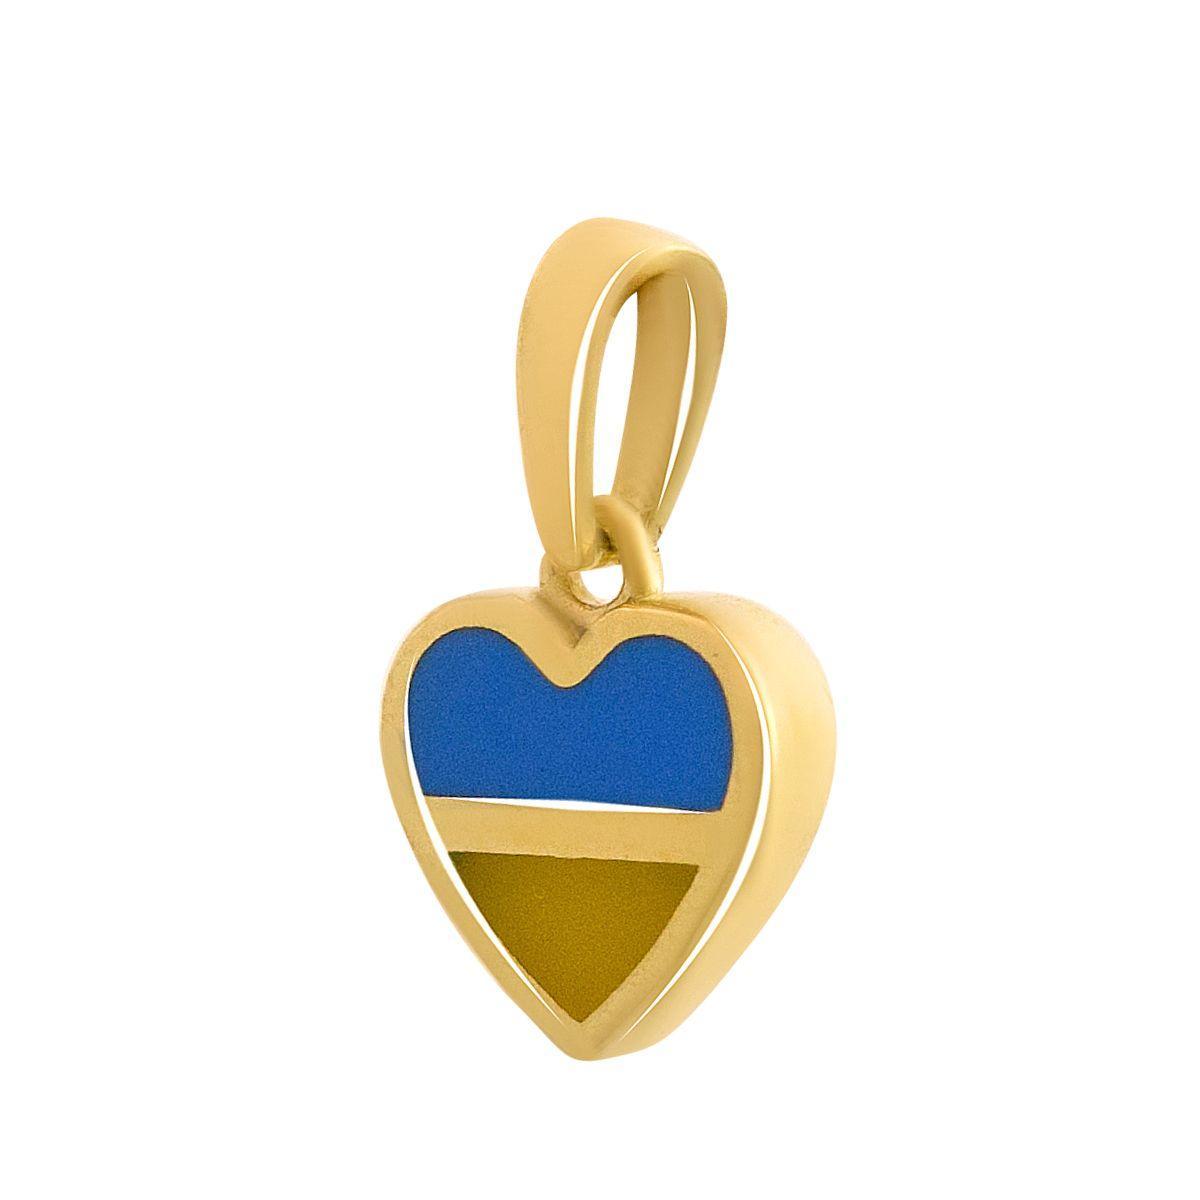 Патріотичний золотий кулон підвіска серце жовто-синій жіноча підвіска кулон у формі серця з прапором України